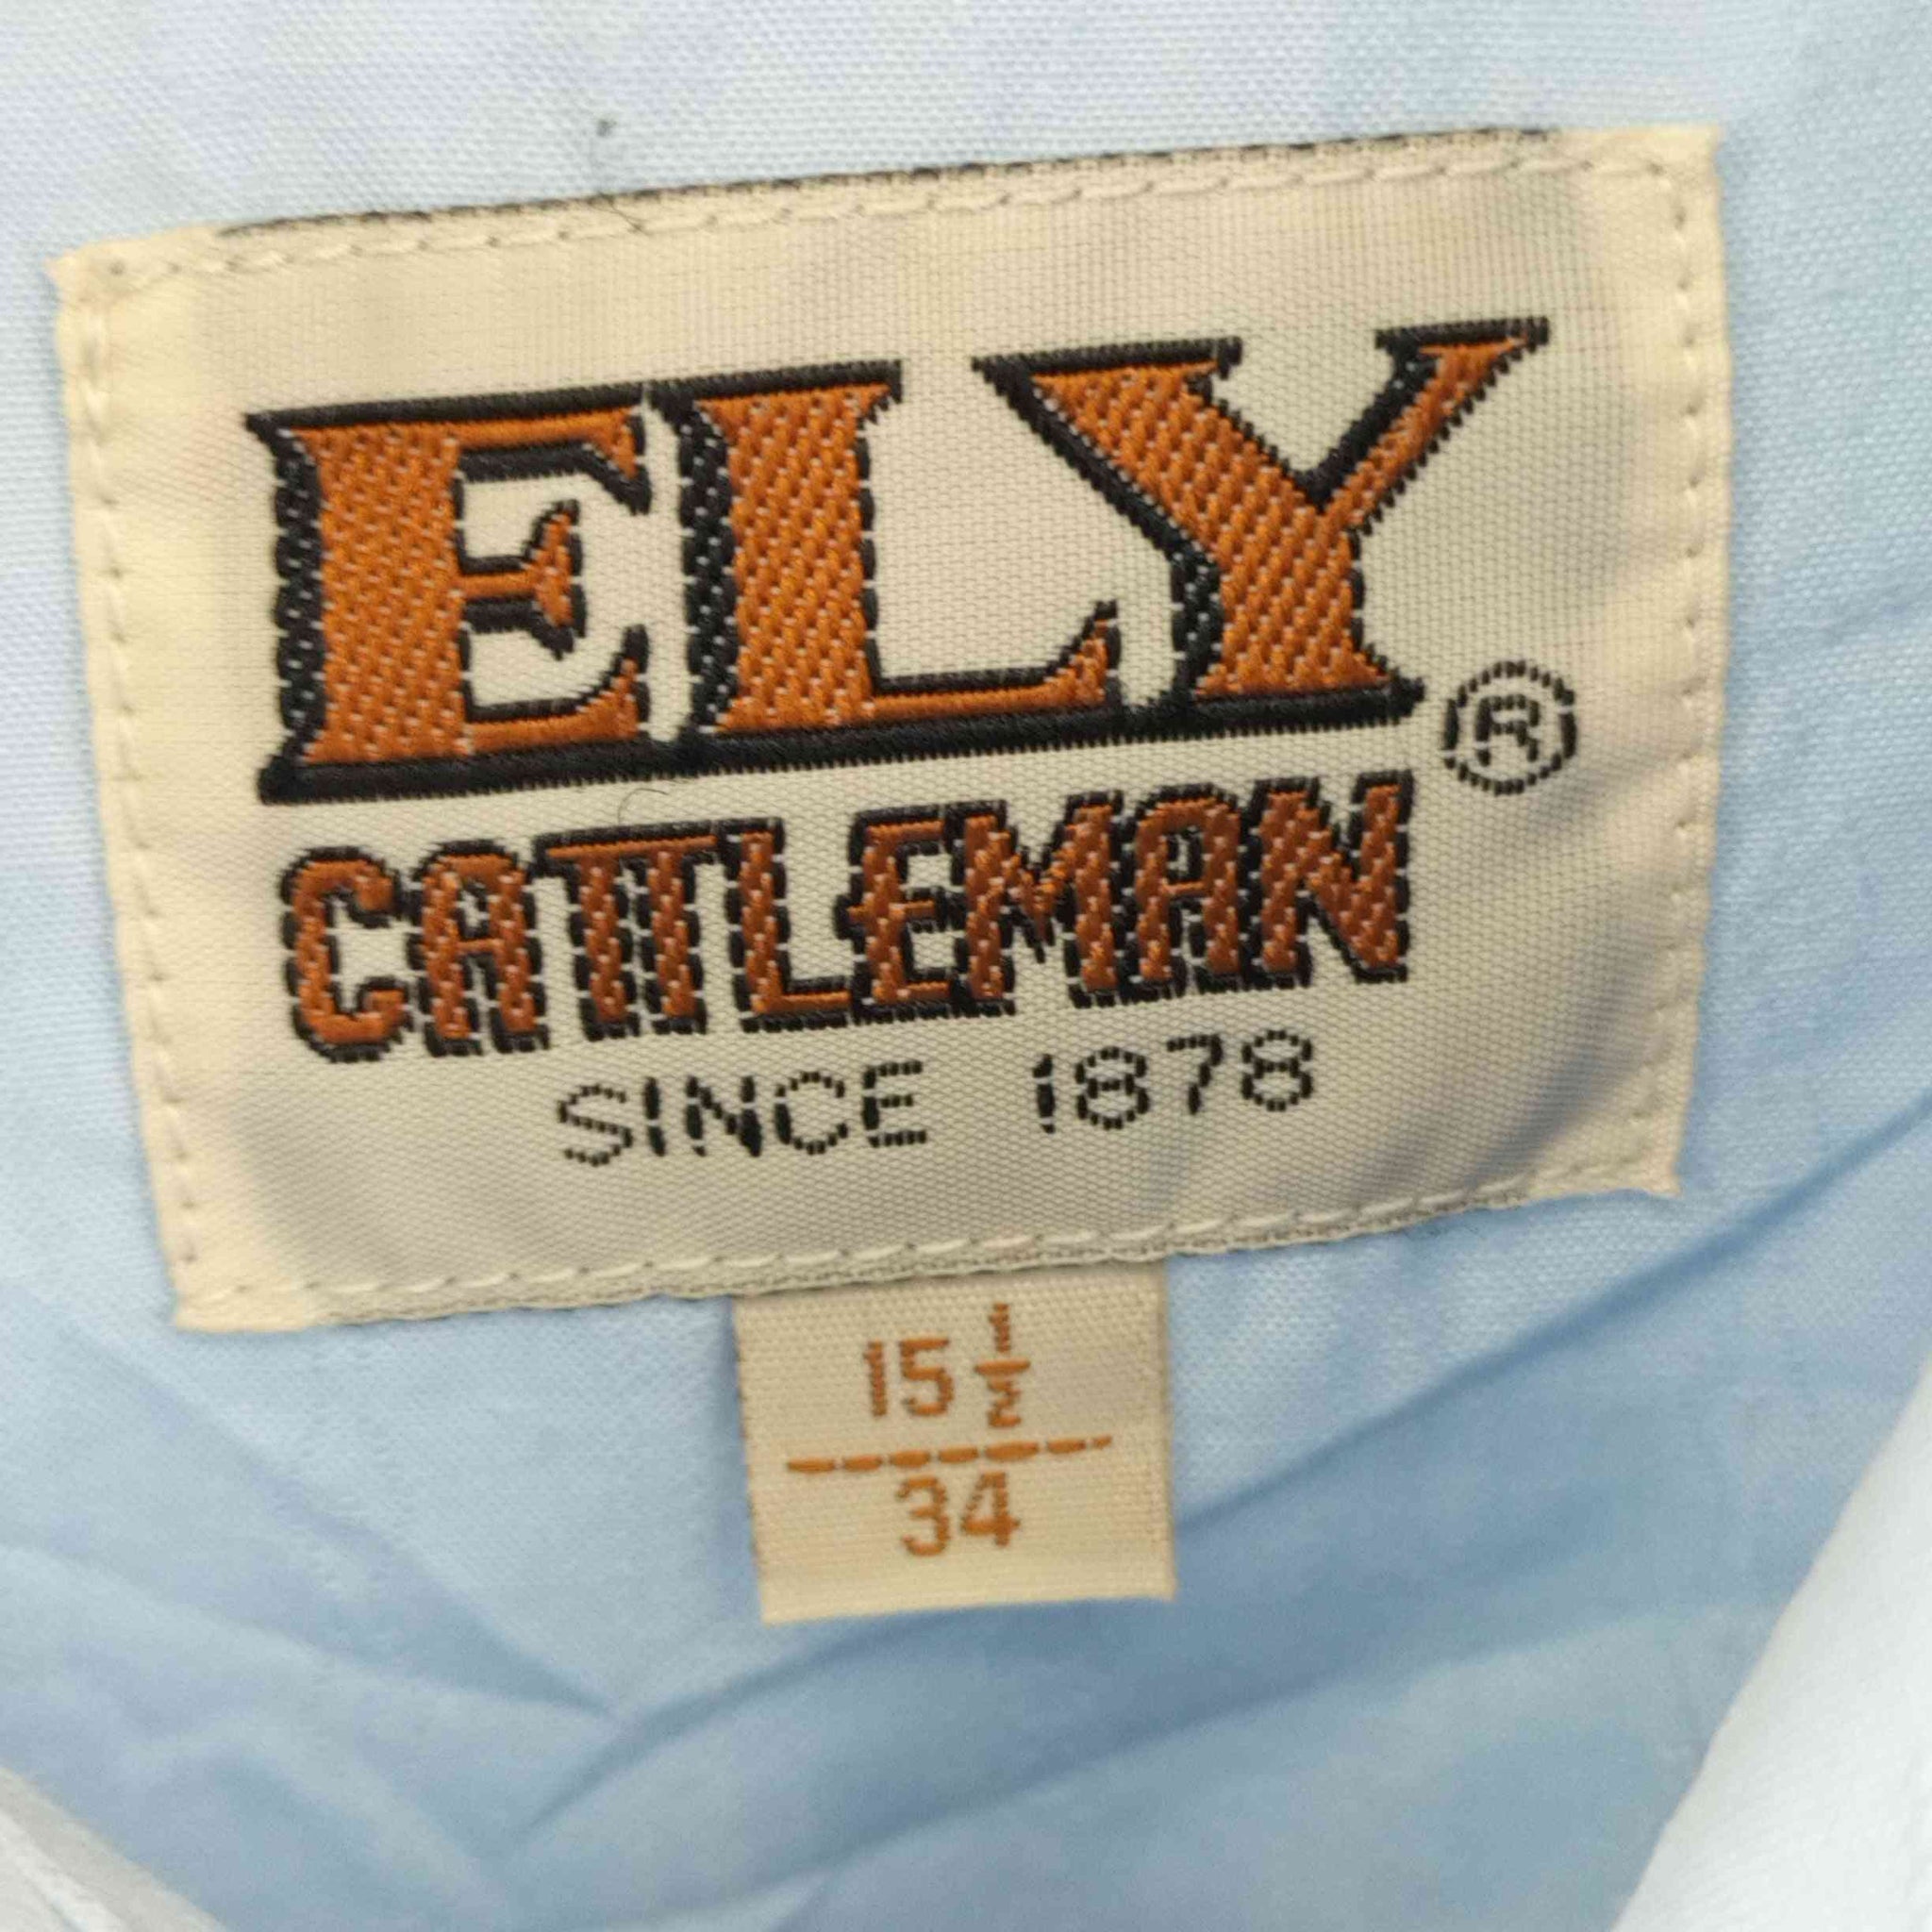 ELY CATTLEMAN(エリーキャトルマン)ゴールド刺繍ウエスタンシャツ